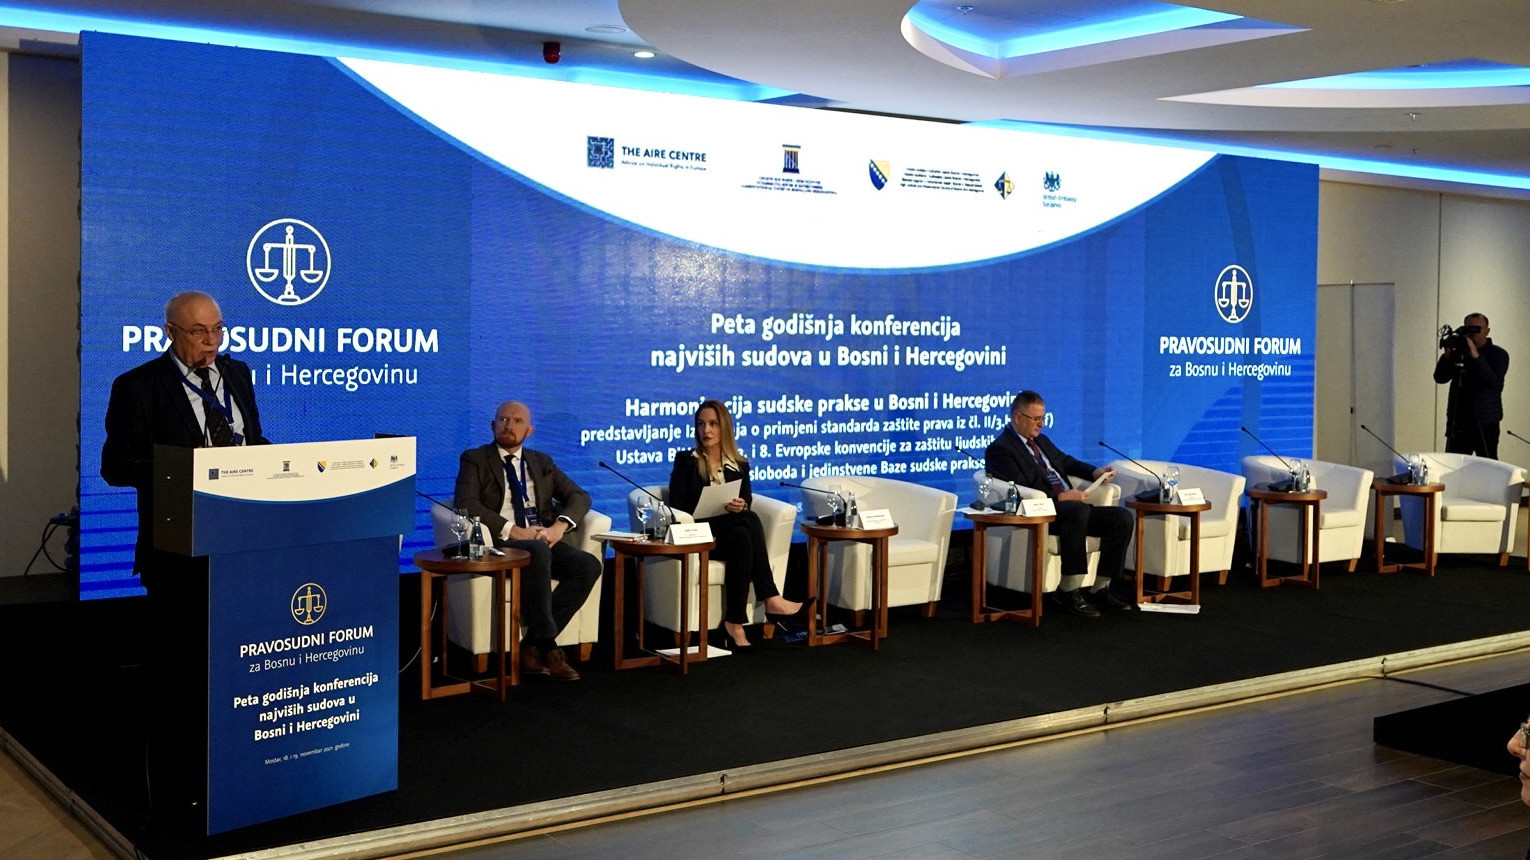 Пета годишња конференција у оквиру Правосудног форума за Босну и Херцеговину